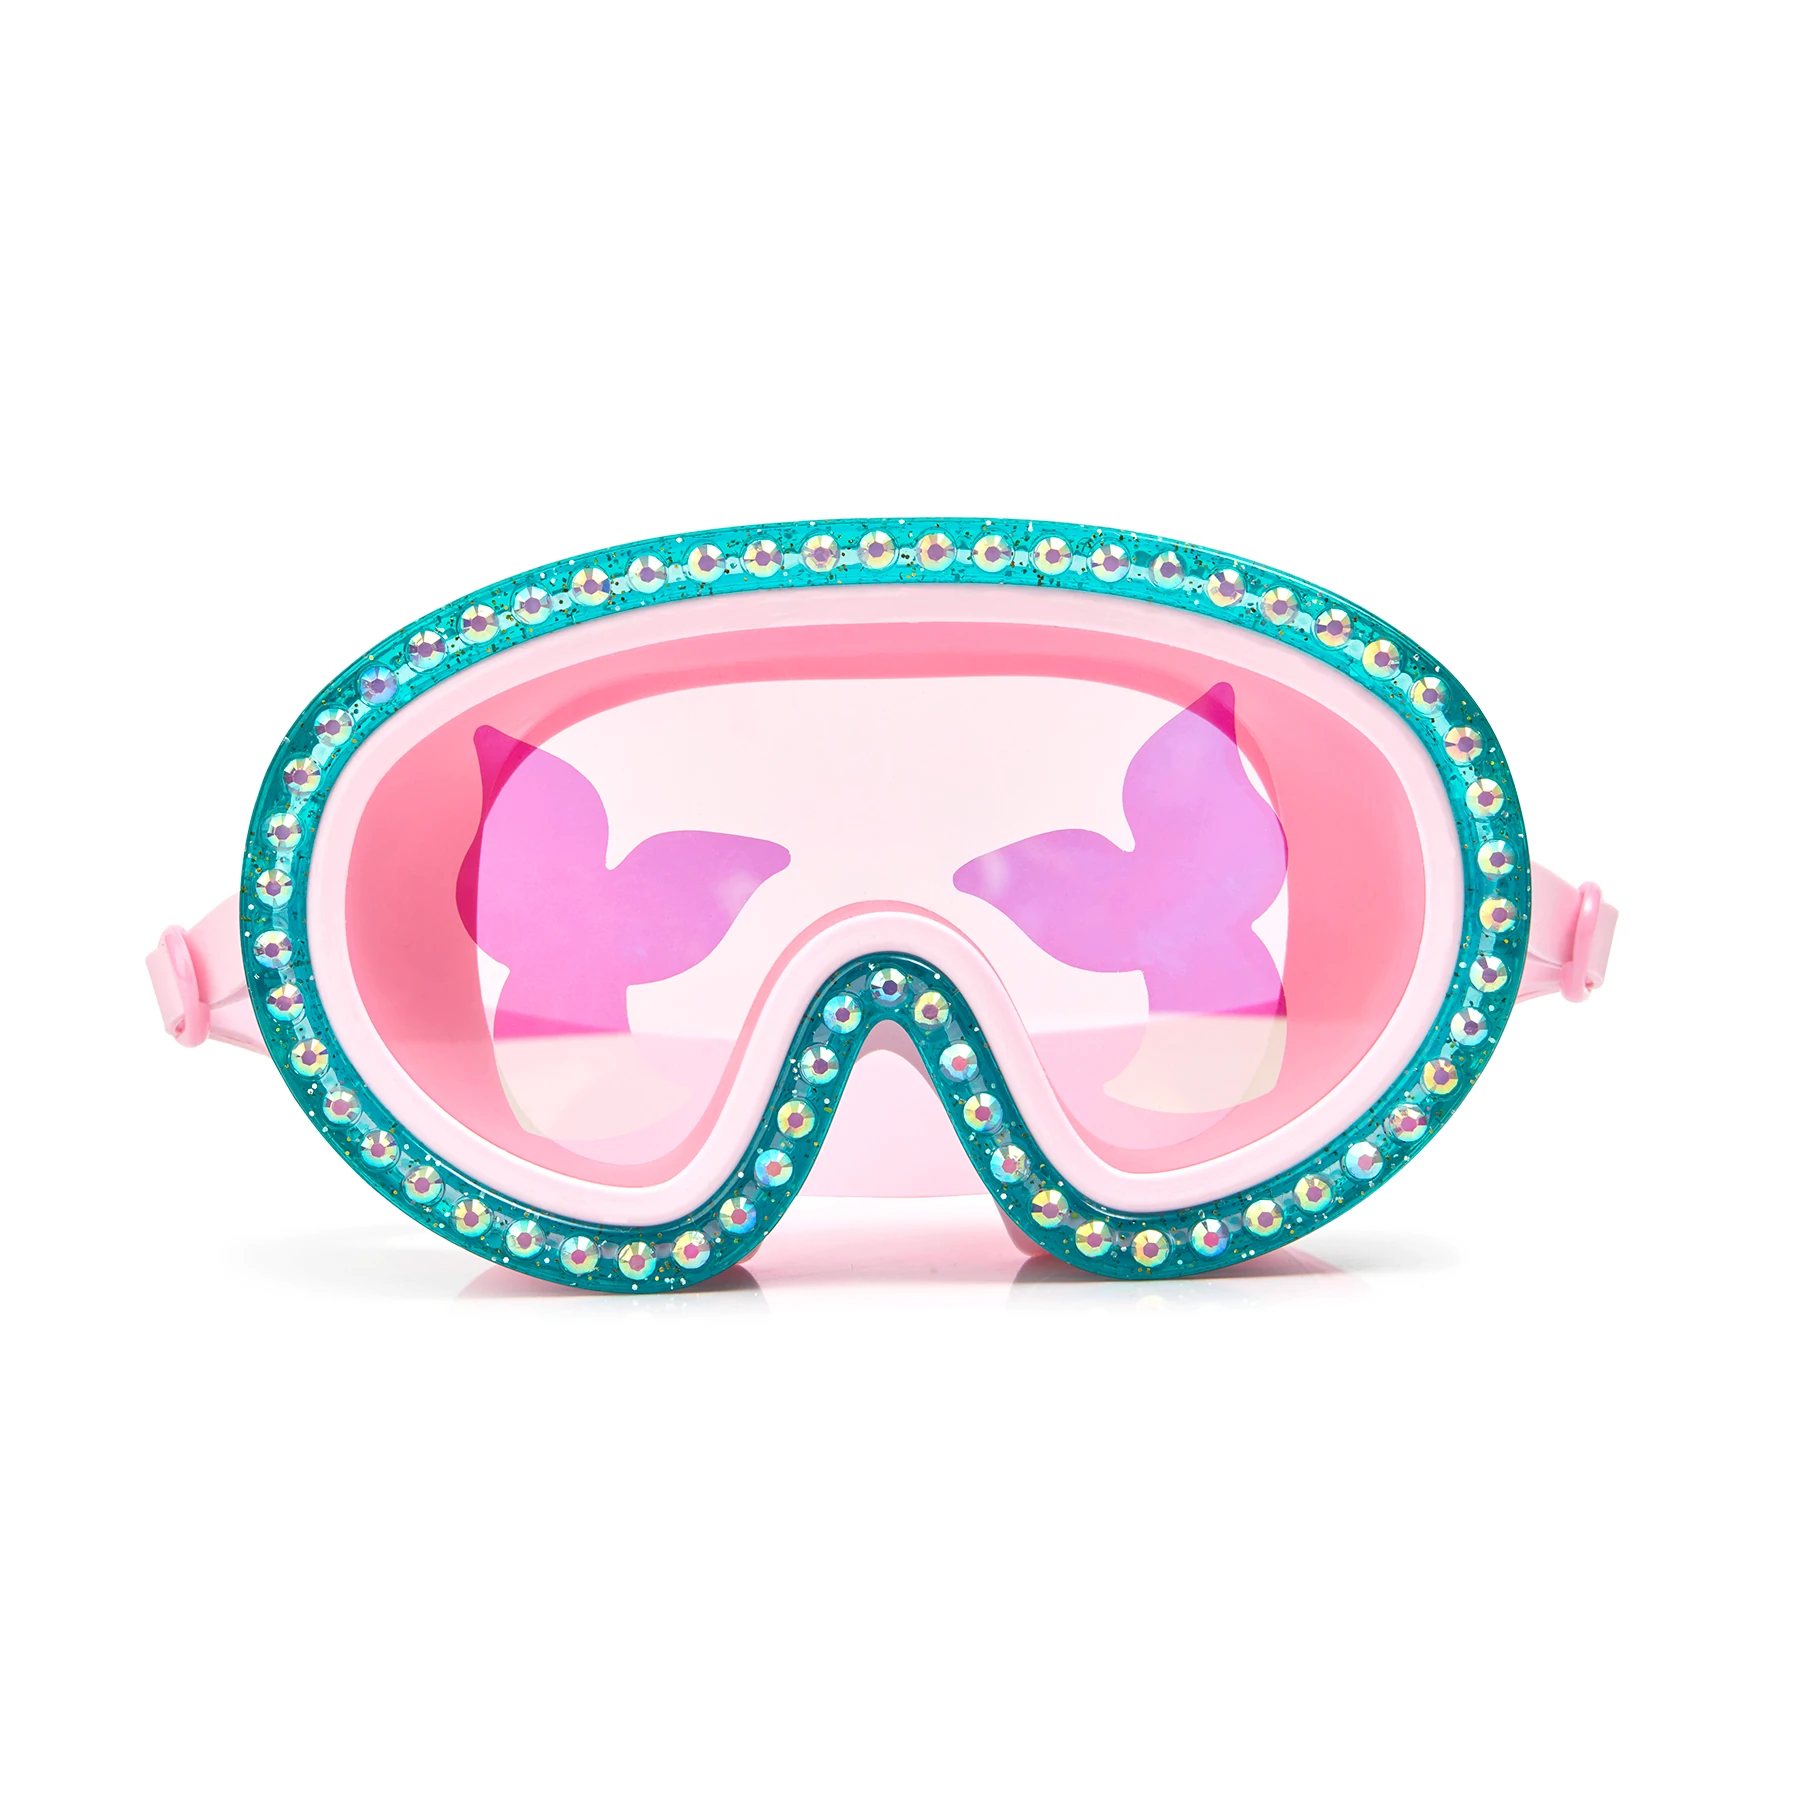 utilgivelig hagl Formen Mermaid Swim Mask Goggles – Awesome Toys Gifts